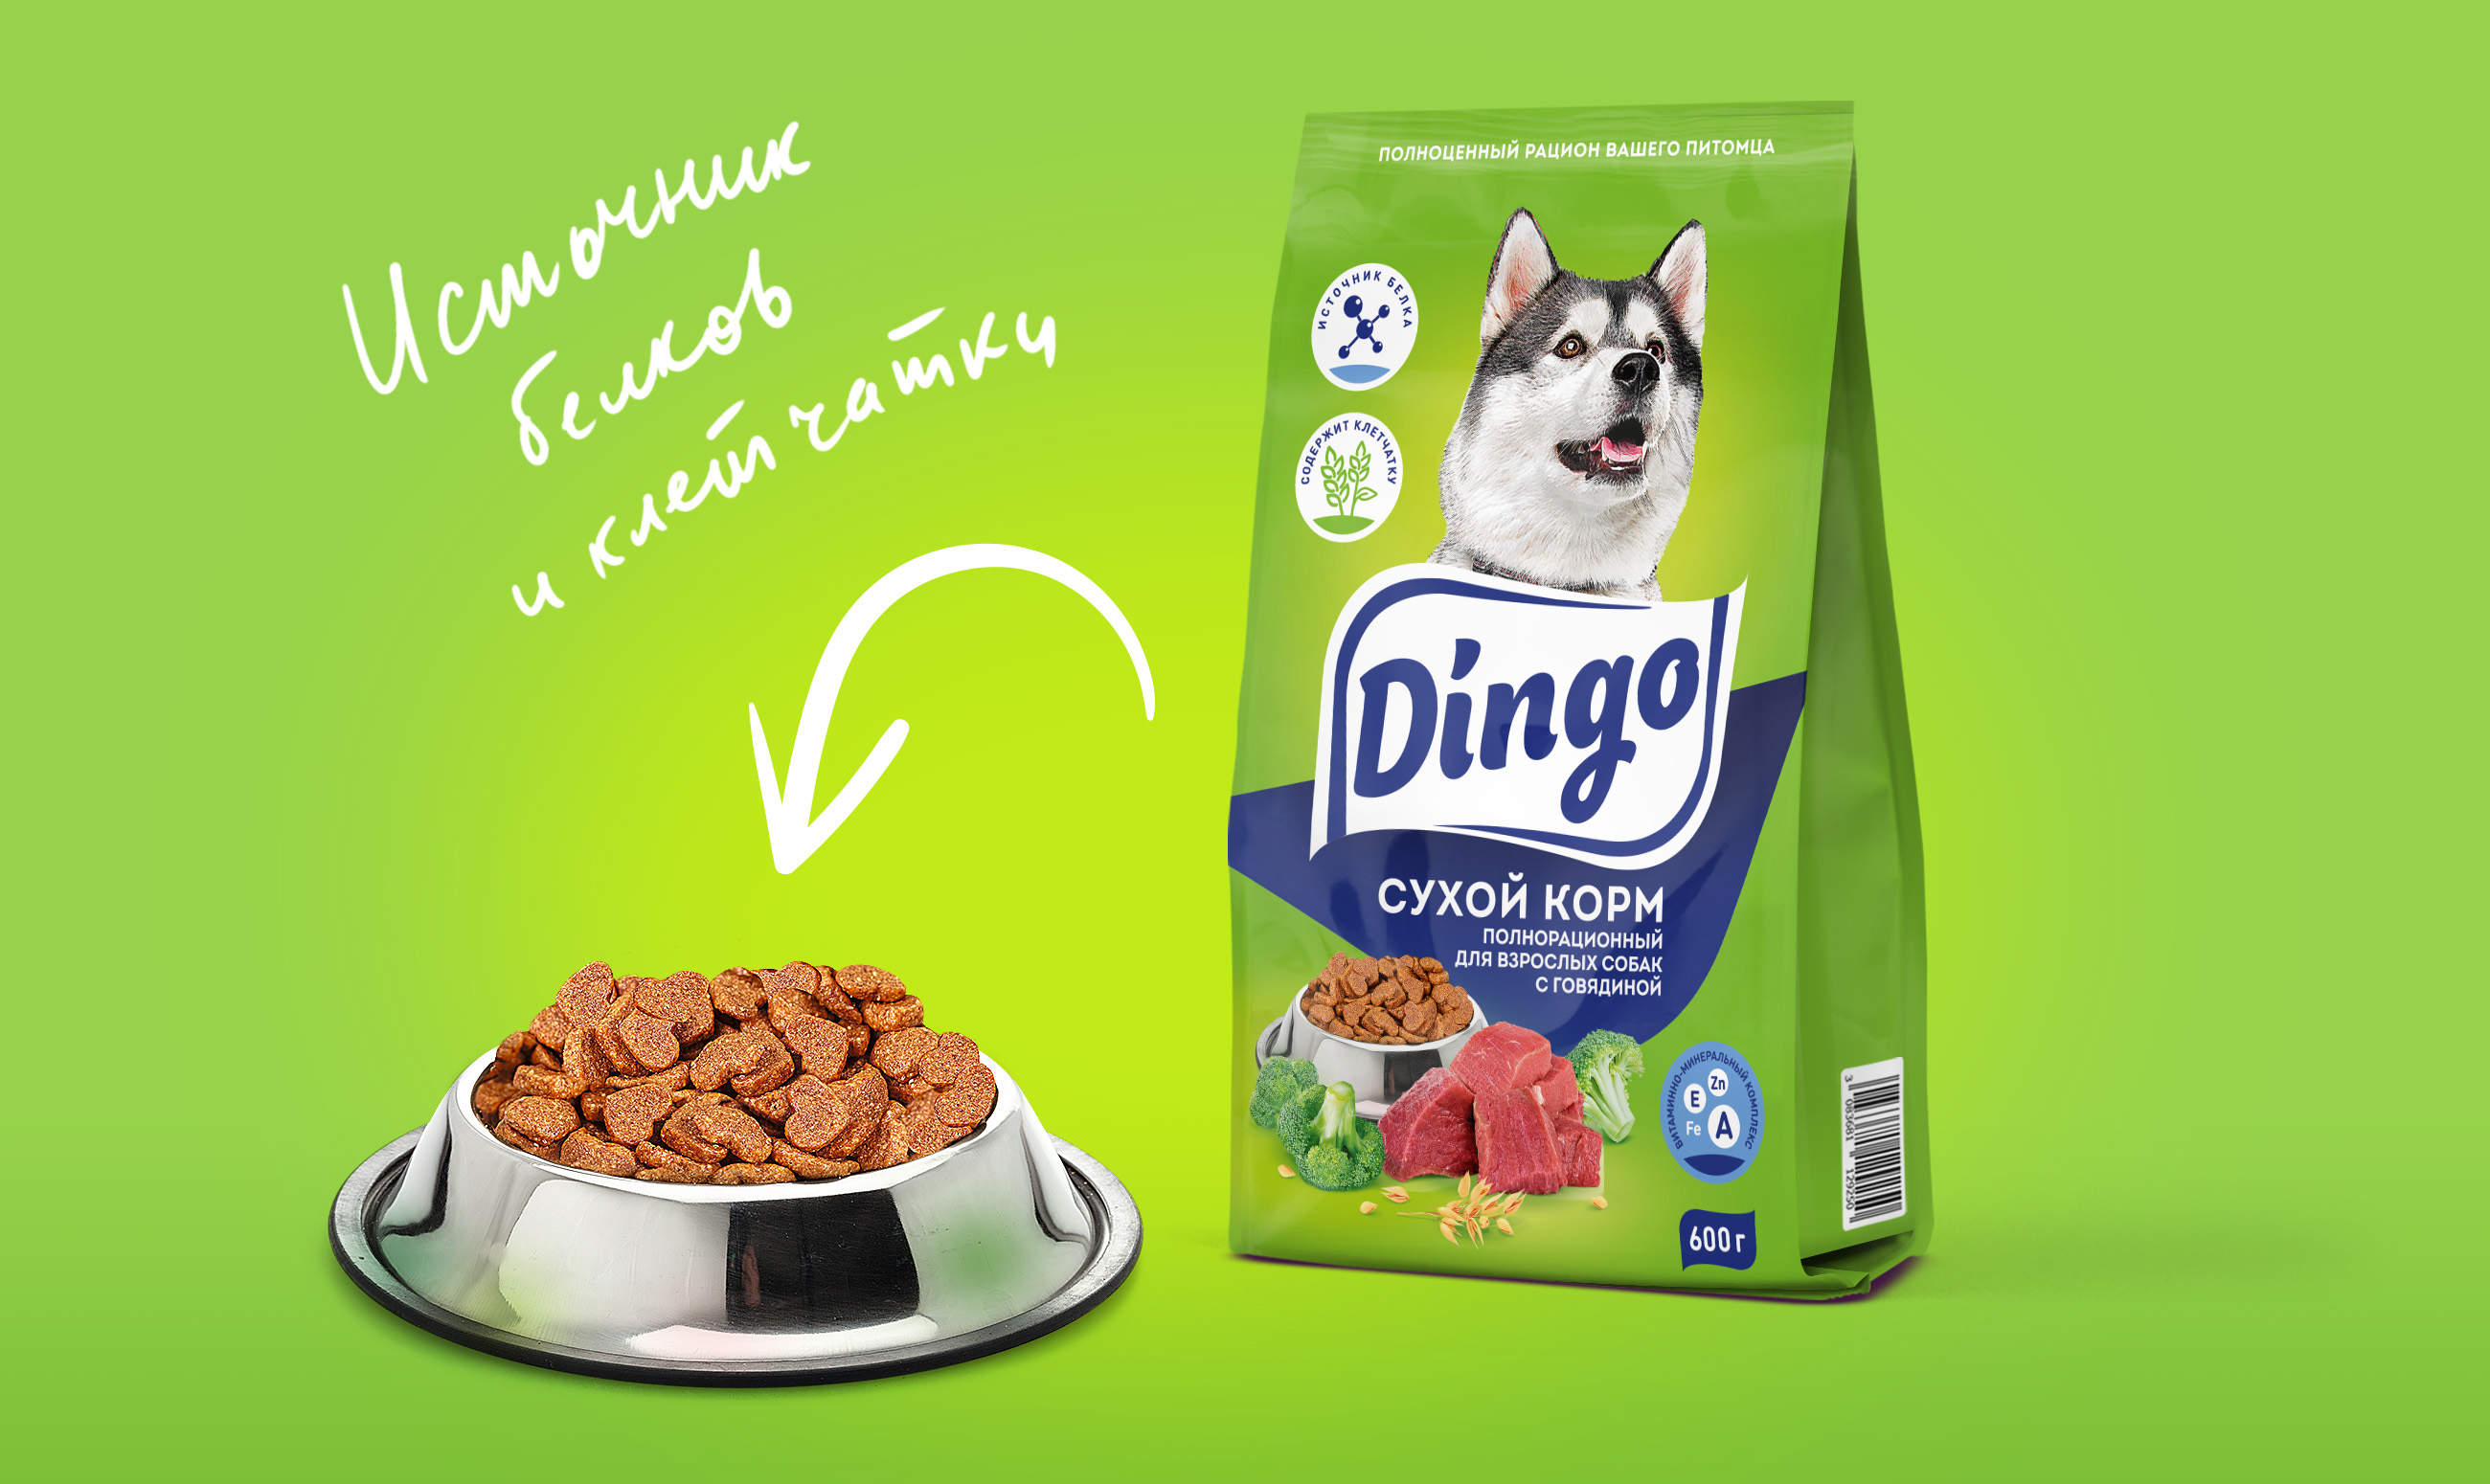 Готовый корм для собак. Корм Динго для собак. Сухой корм для собак Dingo. Корм Динго для собак Пятерочка. Состав Динго сухой корм для собак.